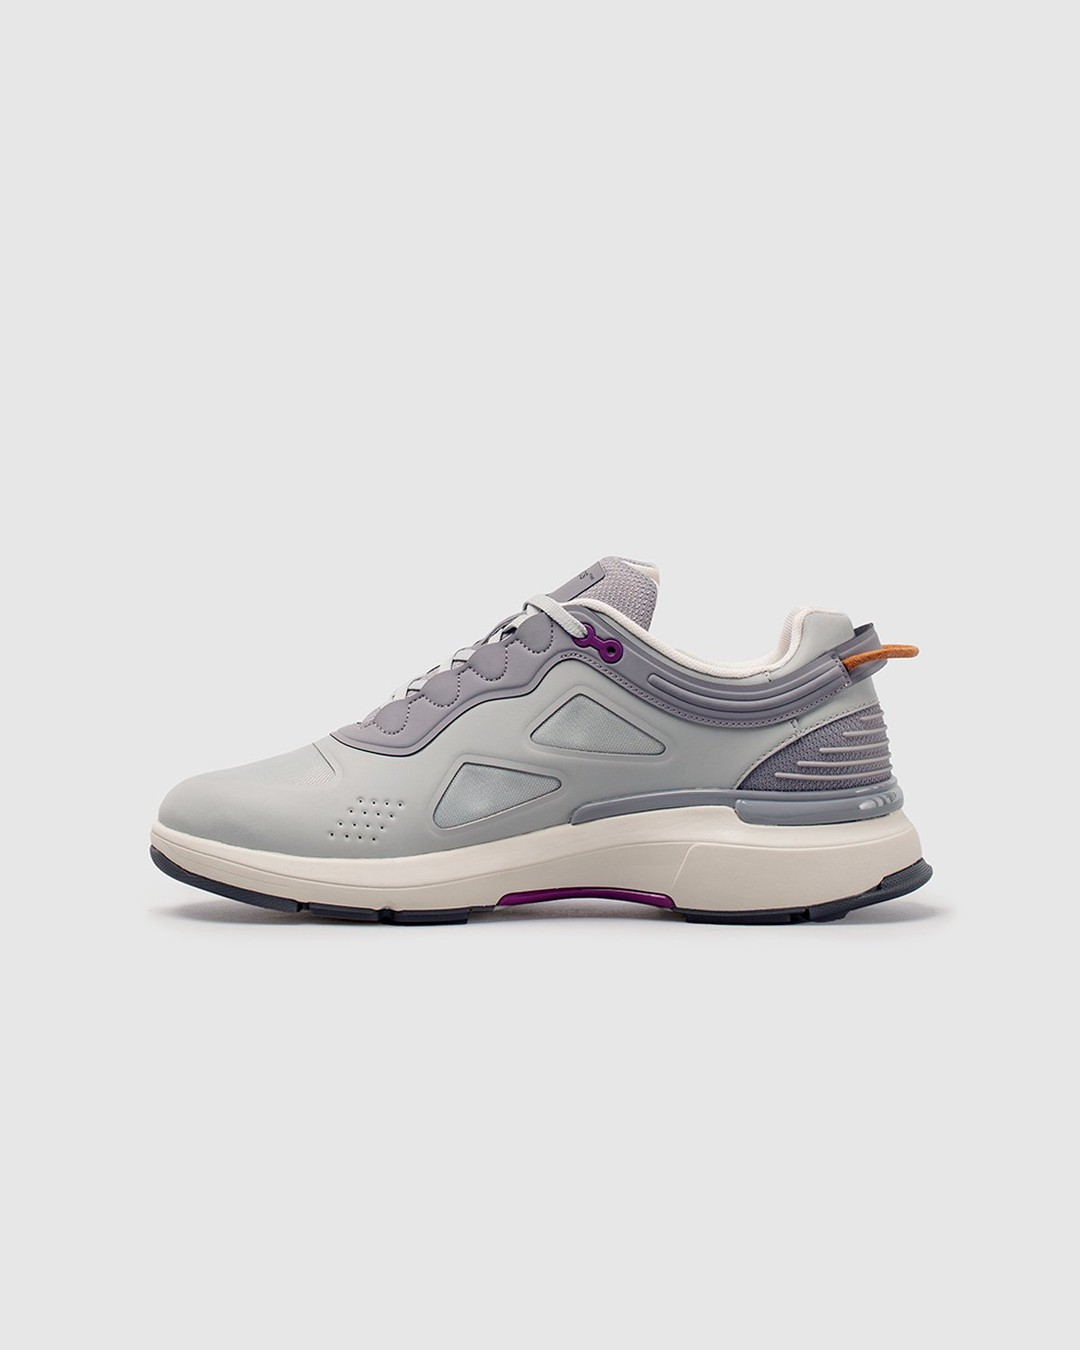 Athletics Footwear – ONE.2 Grey / Formal Grey / G3 Grape - Low Top Sneakers - Grey - Image 4